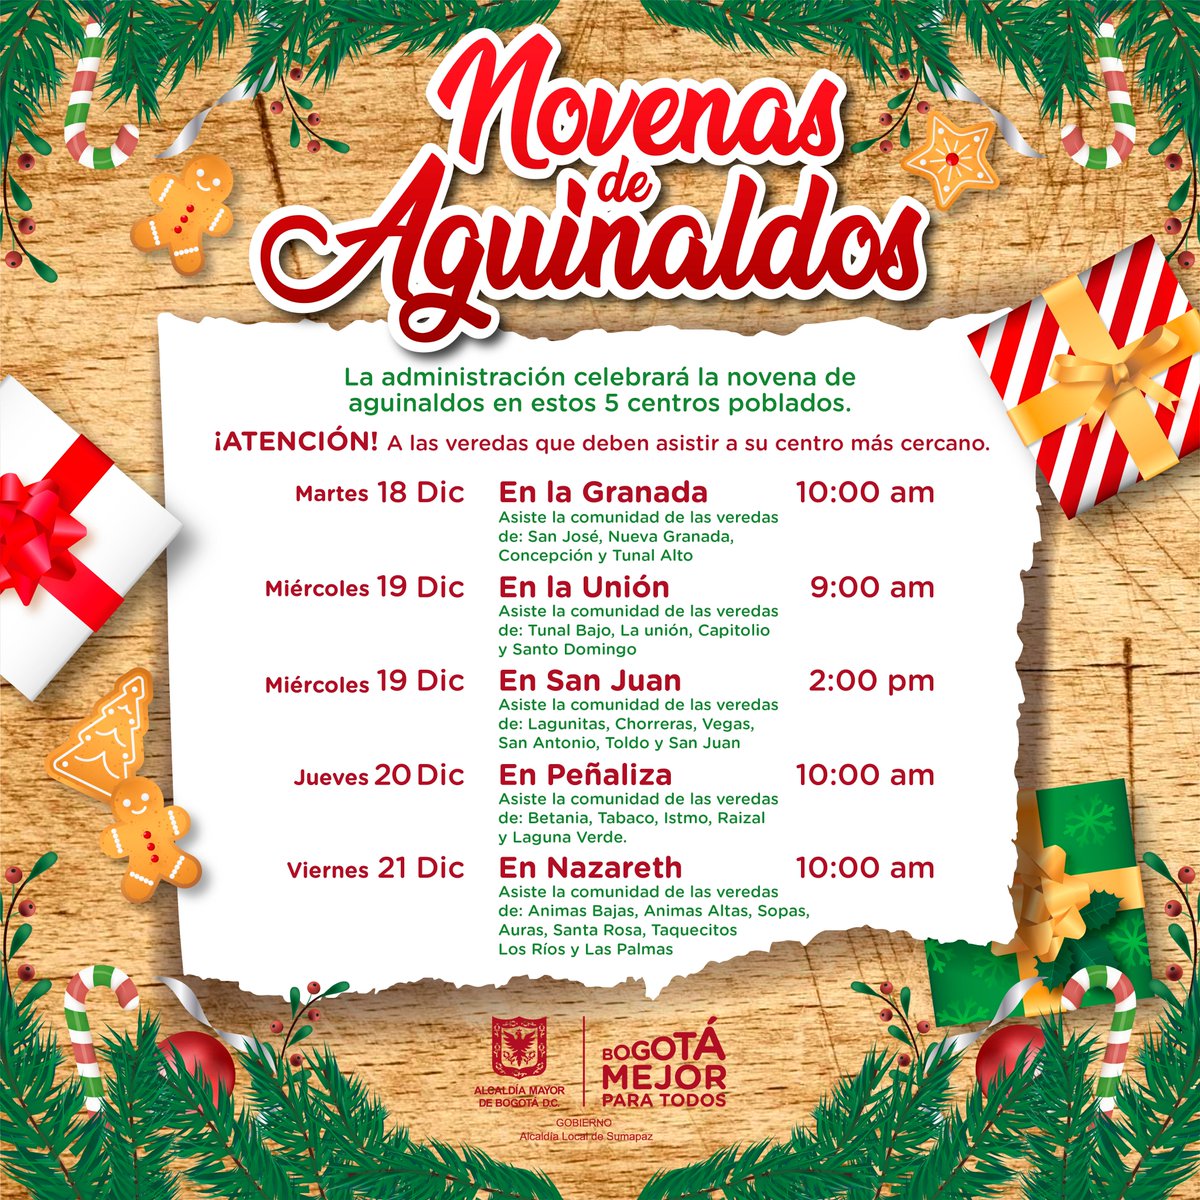 Cronograma de las actividades navideñas en los diferentes corregimientos de Sumapaz